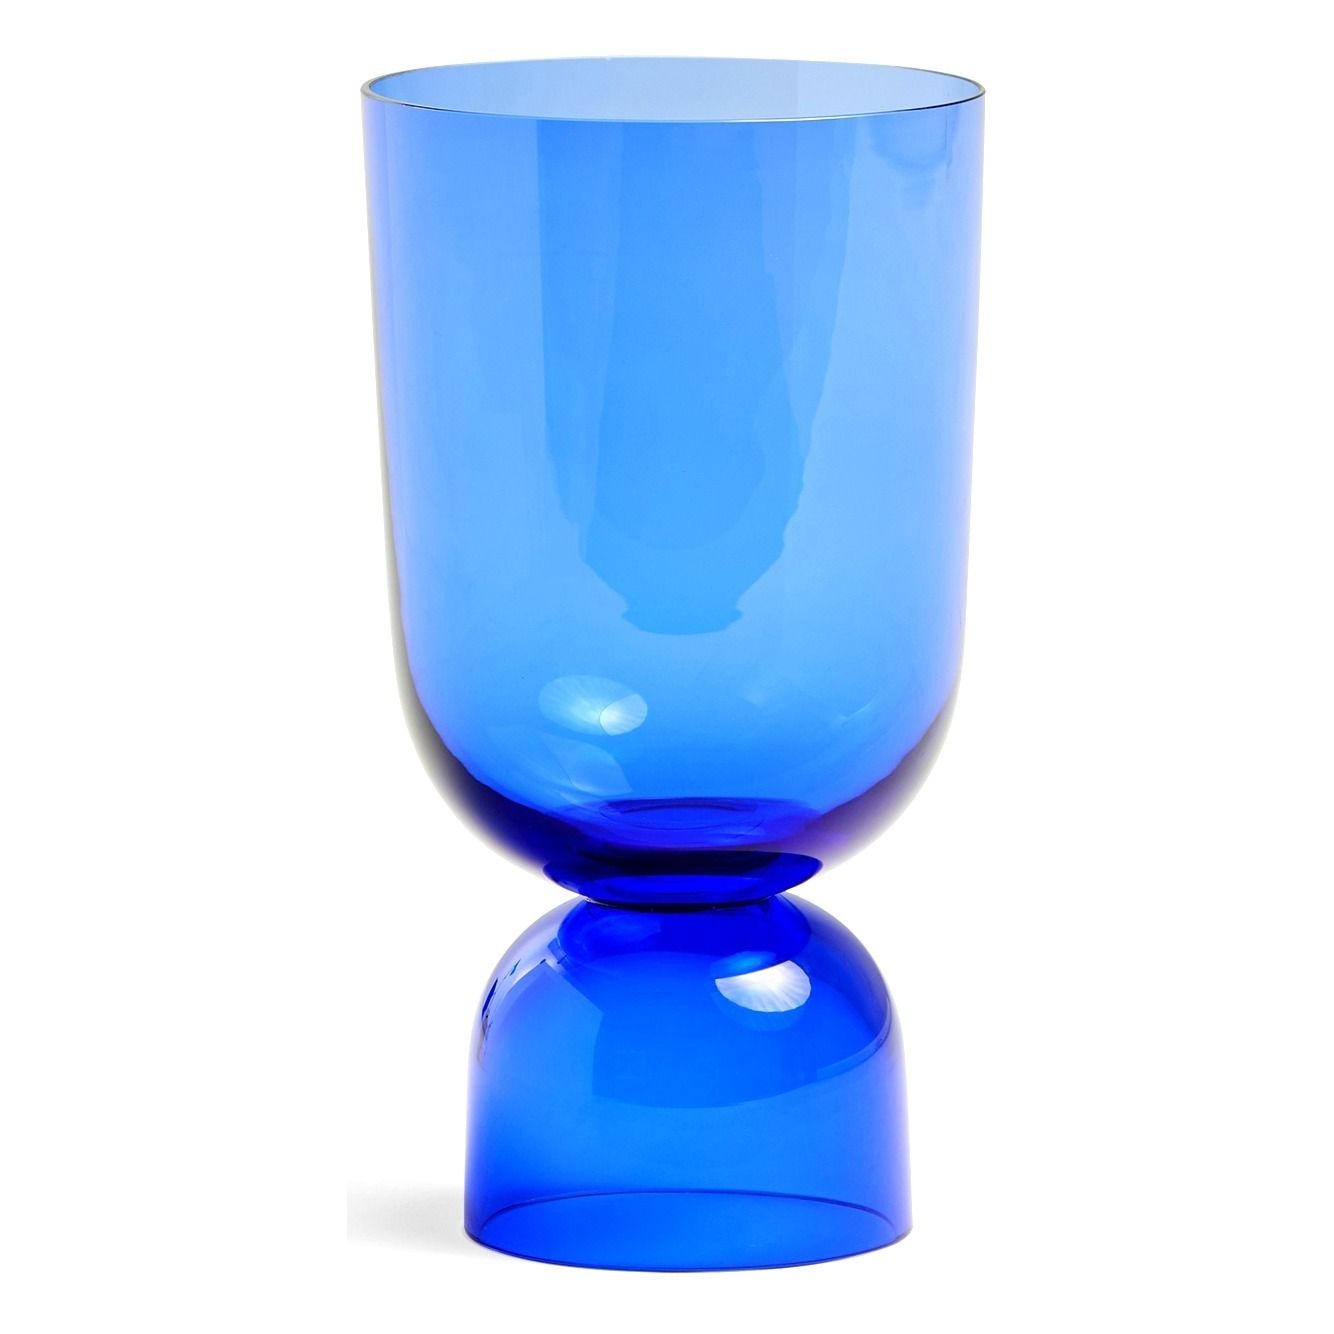 Hay - Vase Bottoms Up en verre - Bleu